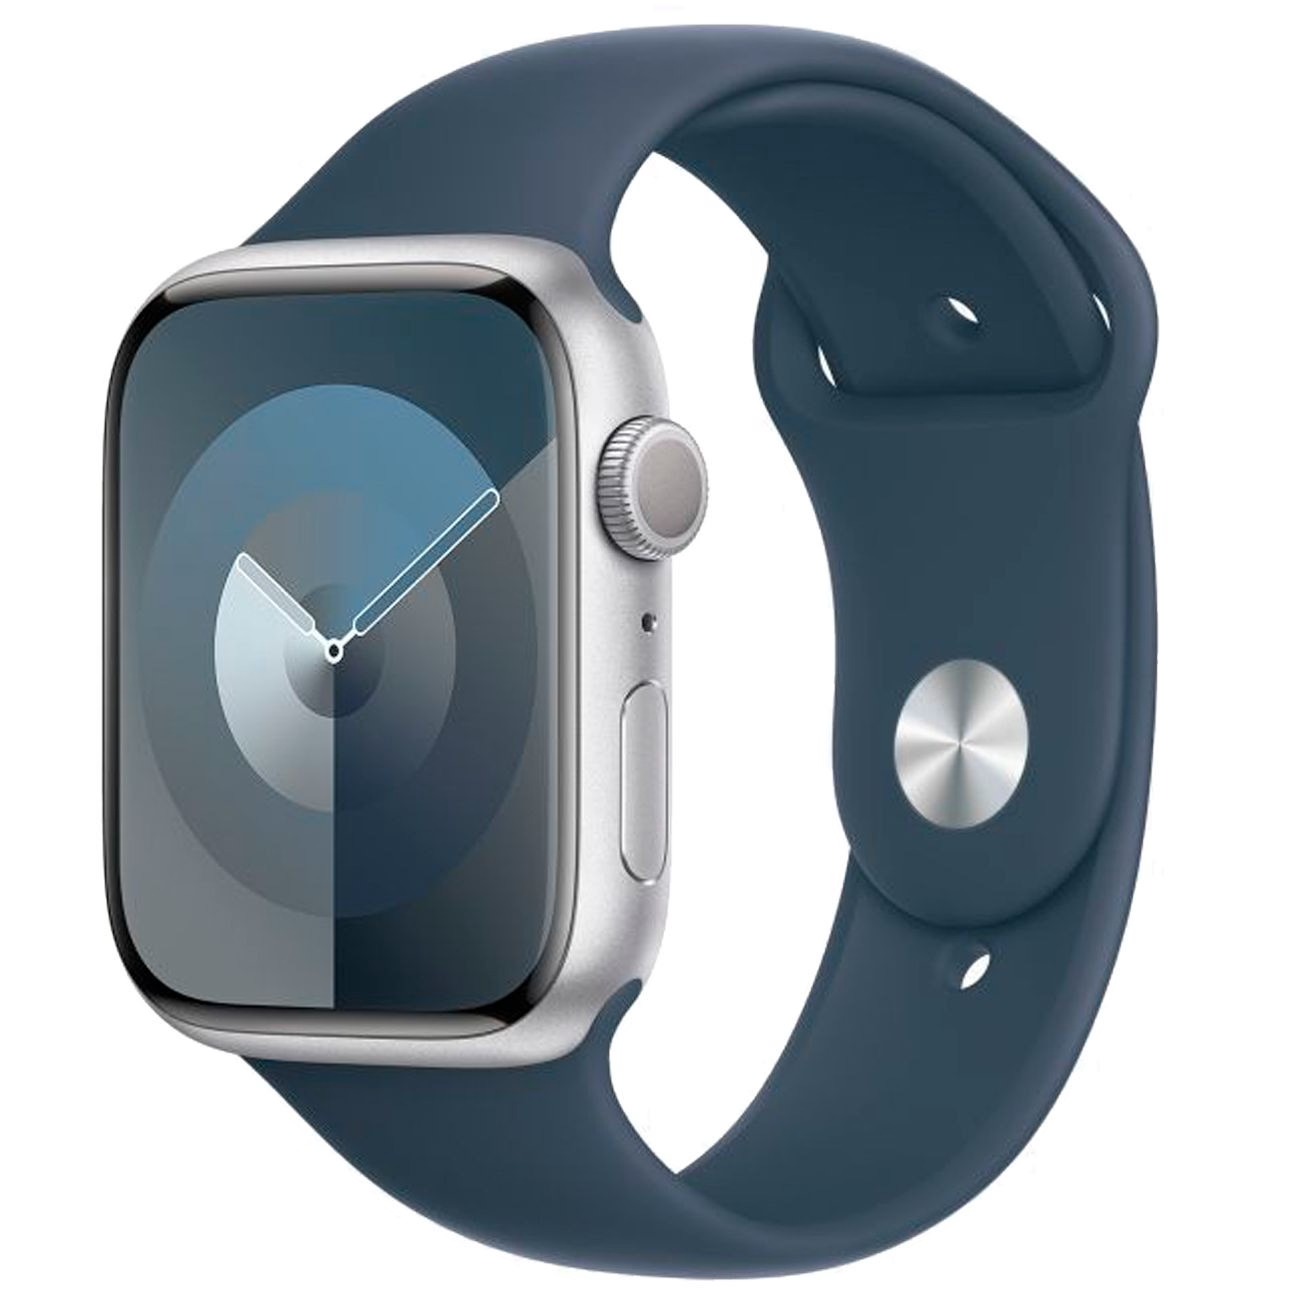 Купить смарт-часы apple watch s9 41mm silver aluminium/white Apple Watch 9 в официальном магазине Apple, Samsung, Xiaomi. iPixel.ru Купить, заказ, кредит, рассрочка, отзывы,  характеристики, цена,  фотографии, в подарок.